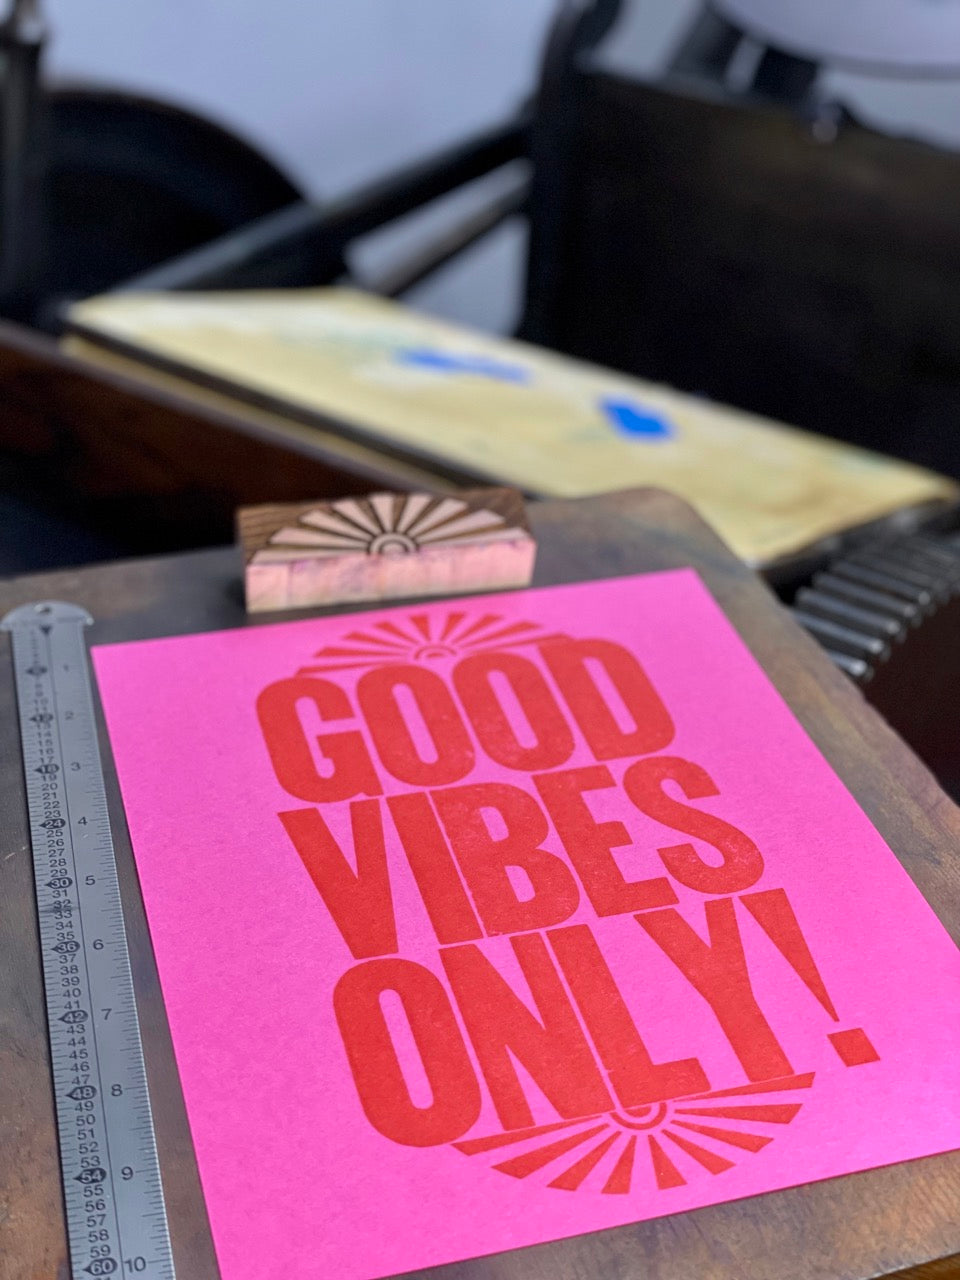 Good Vibes Only - 8x10 Letterpress art print